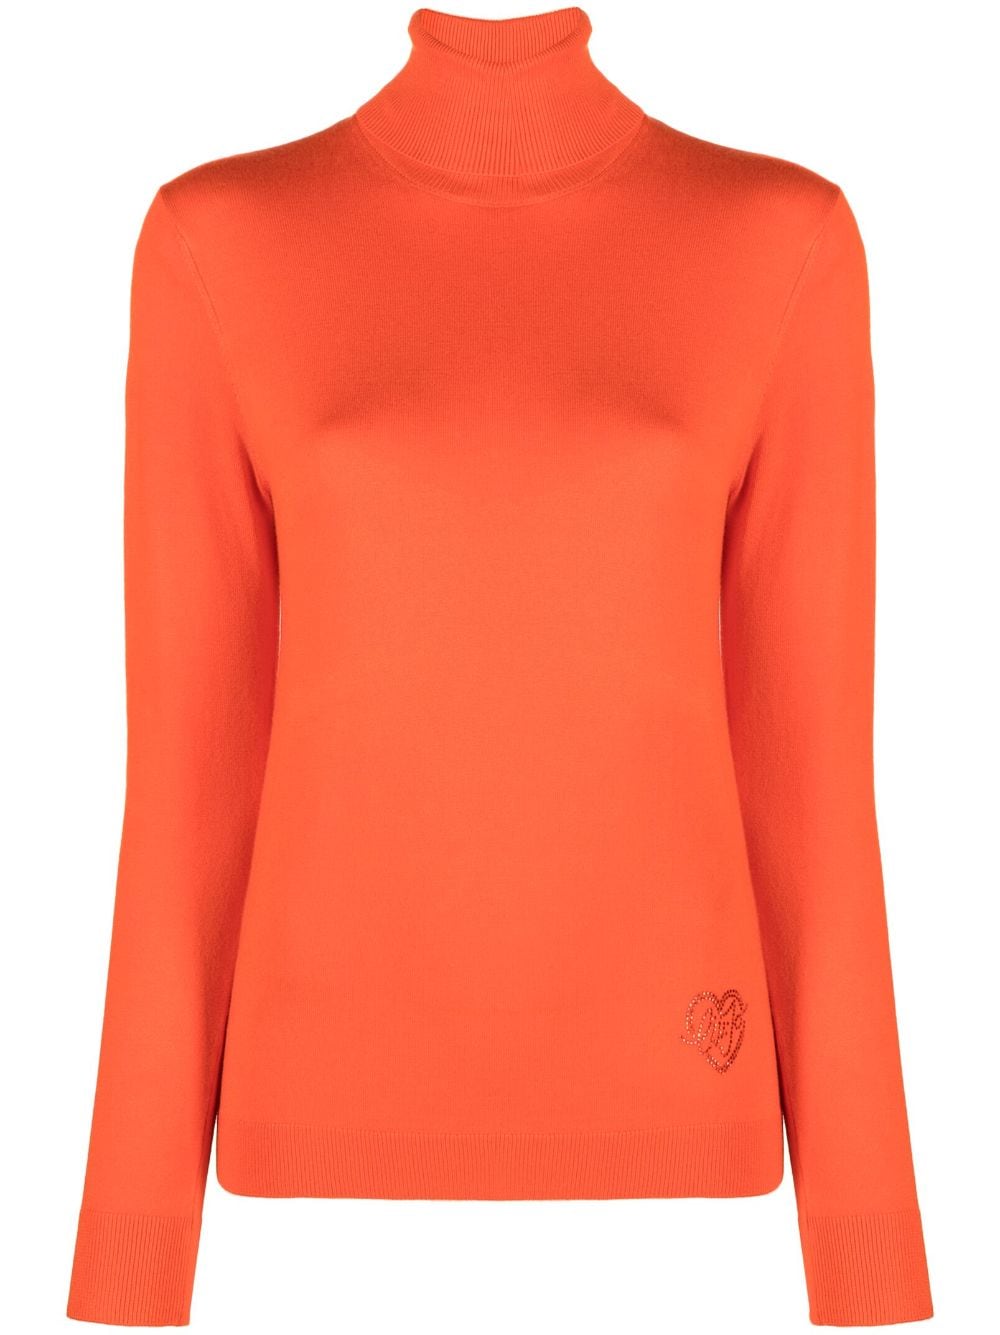 LIU JO high-neck knitted top - Orange von LIU JO